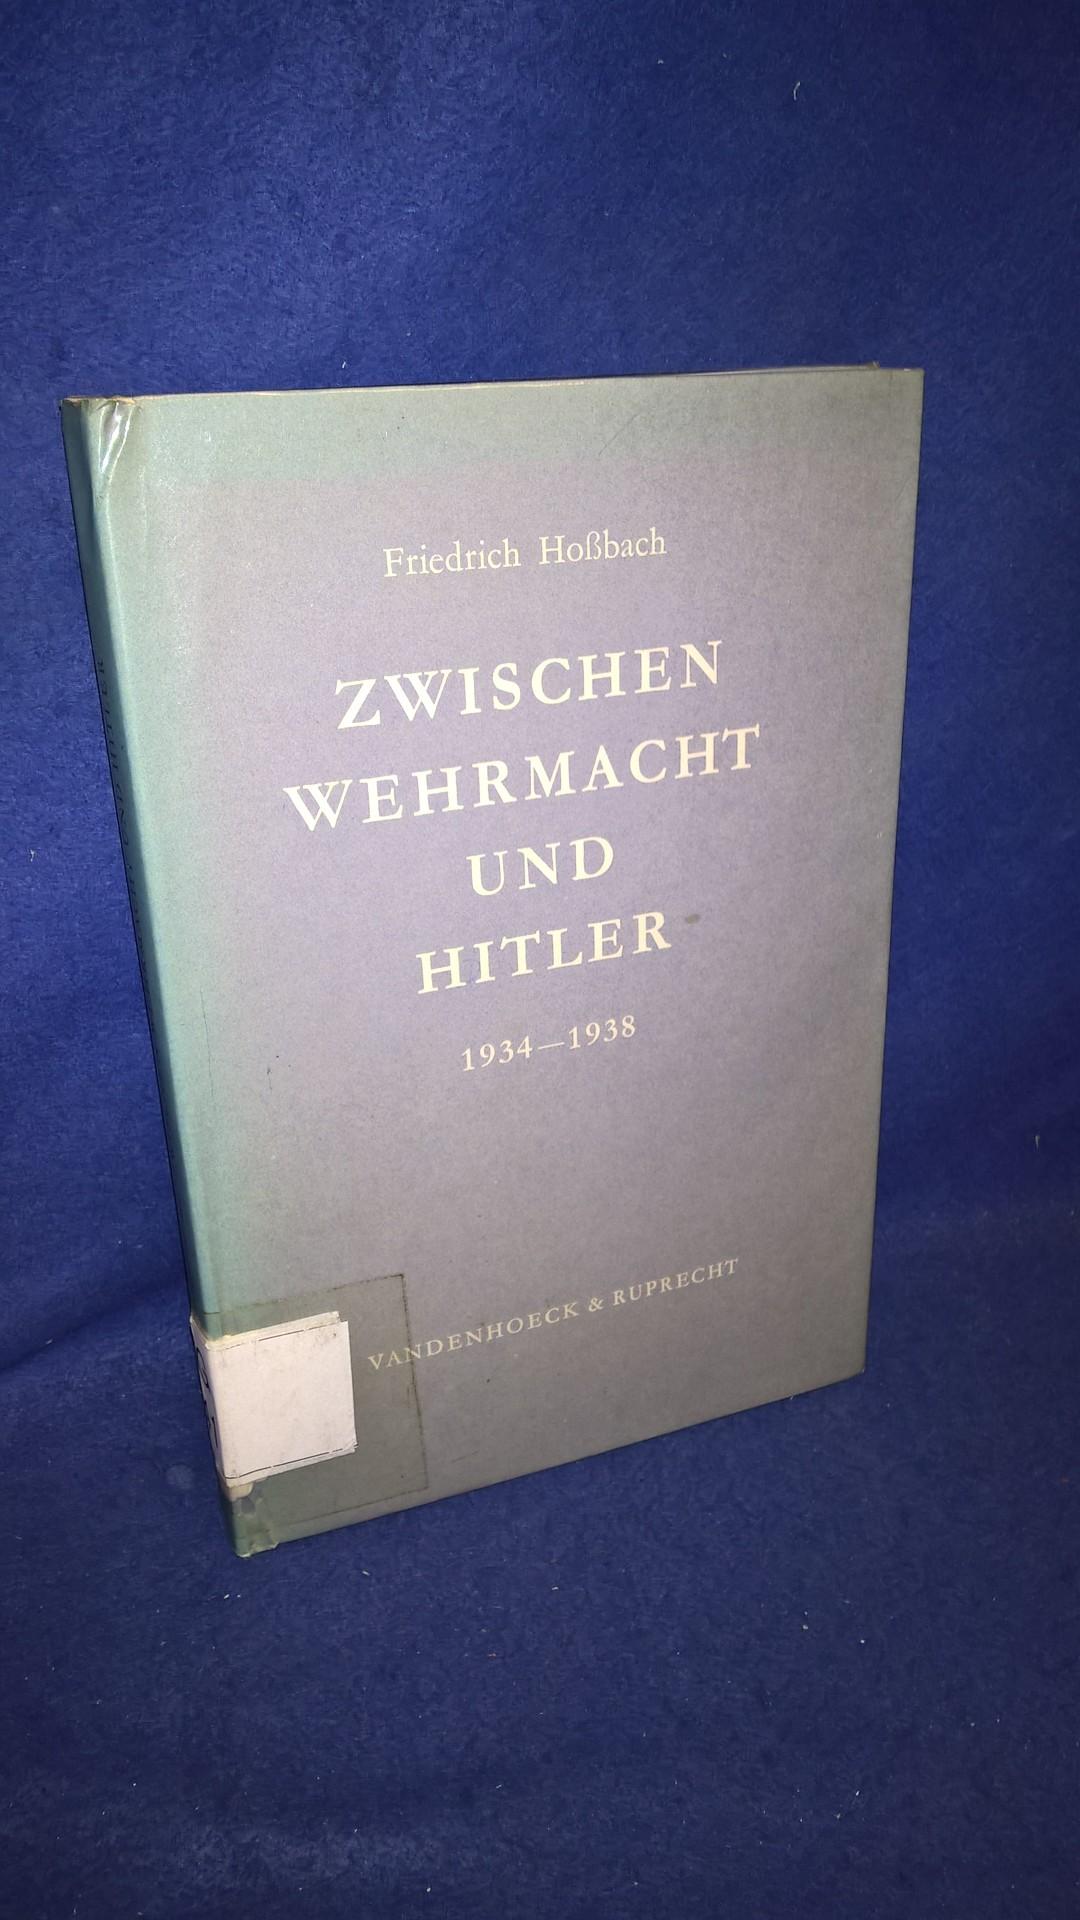 Zwischen Wehrmacht und Hitler 1934 - 1938.